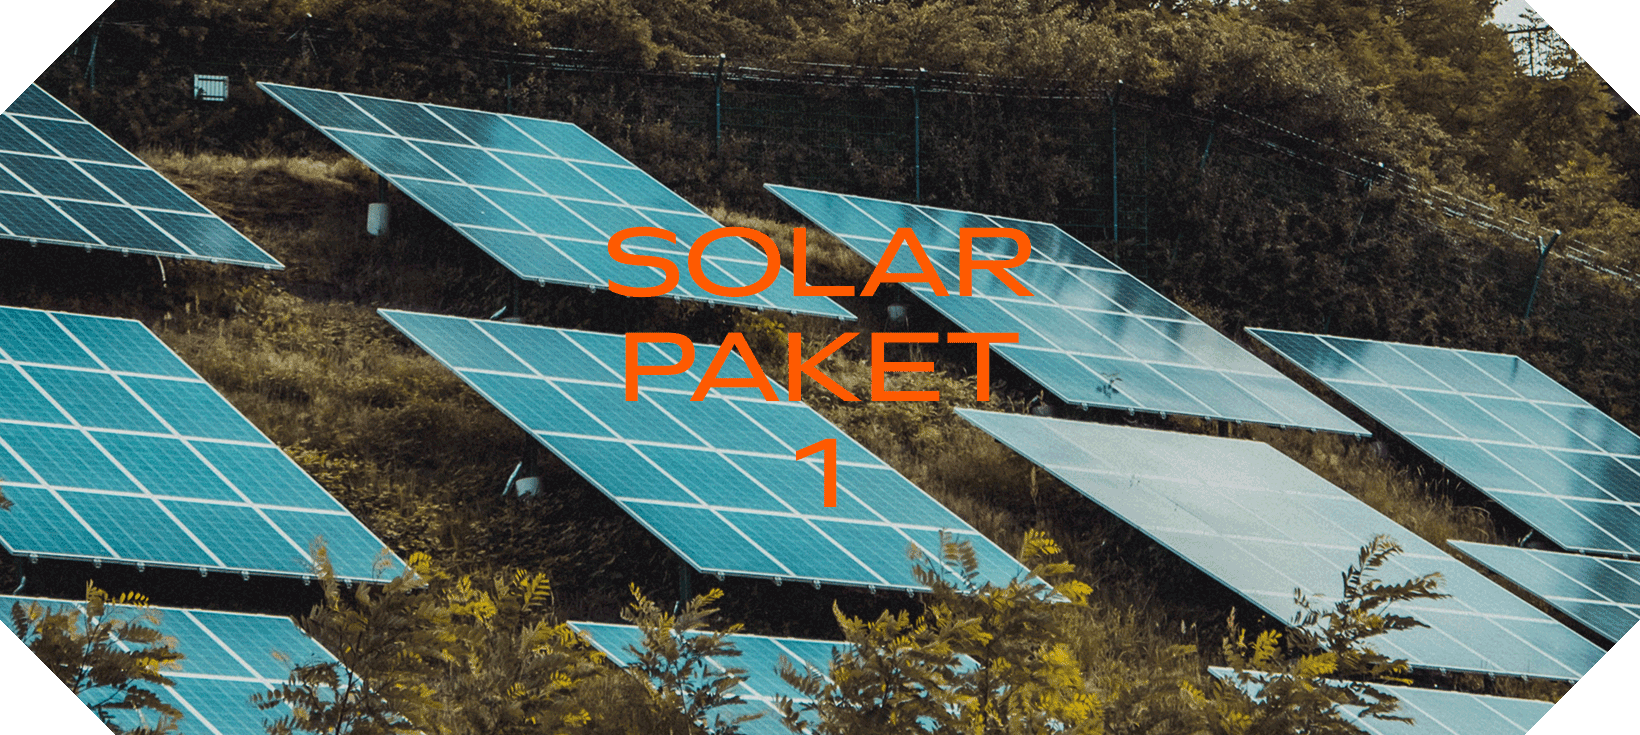 Solarpaket 1: Neue Gesetze & Erleichterung für Photovoltaik